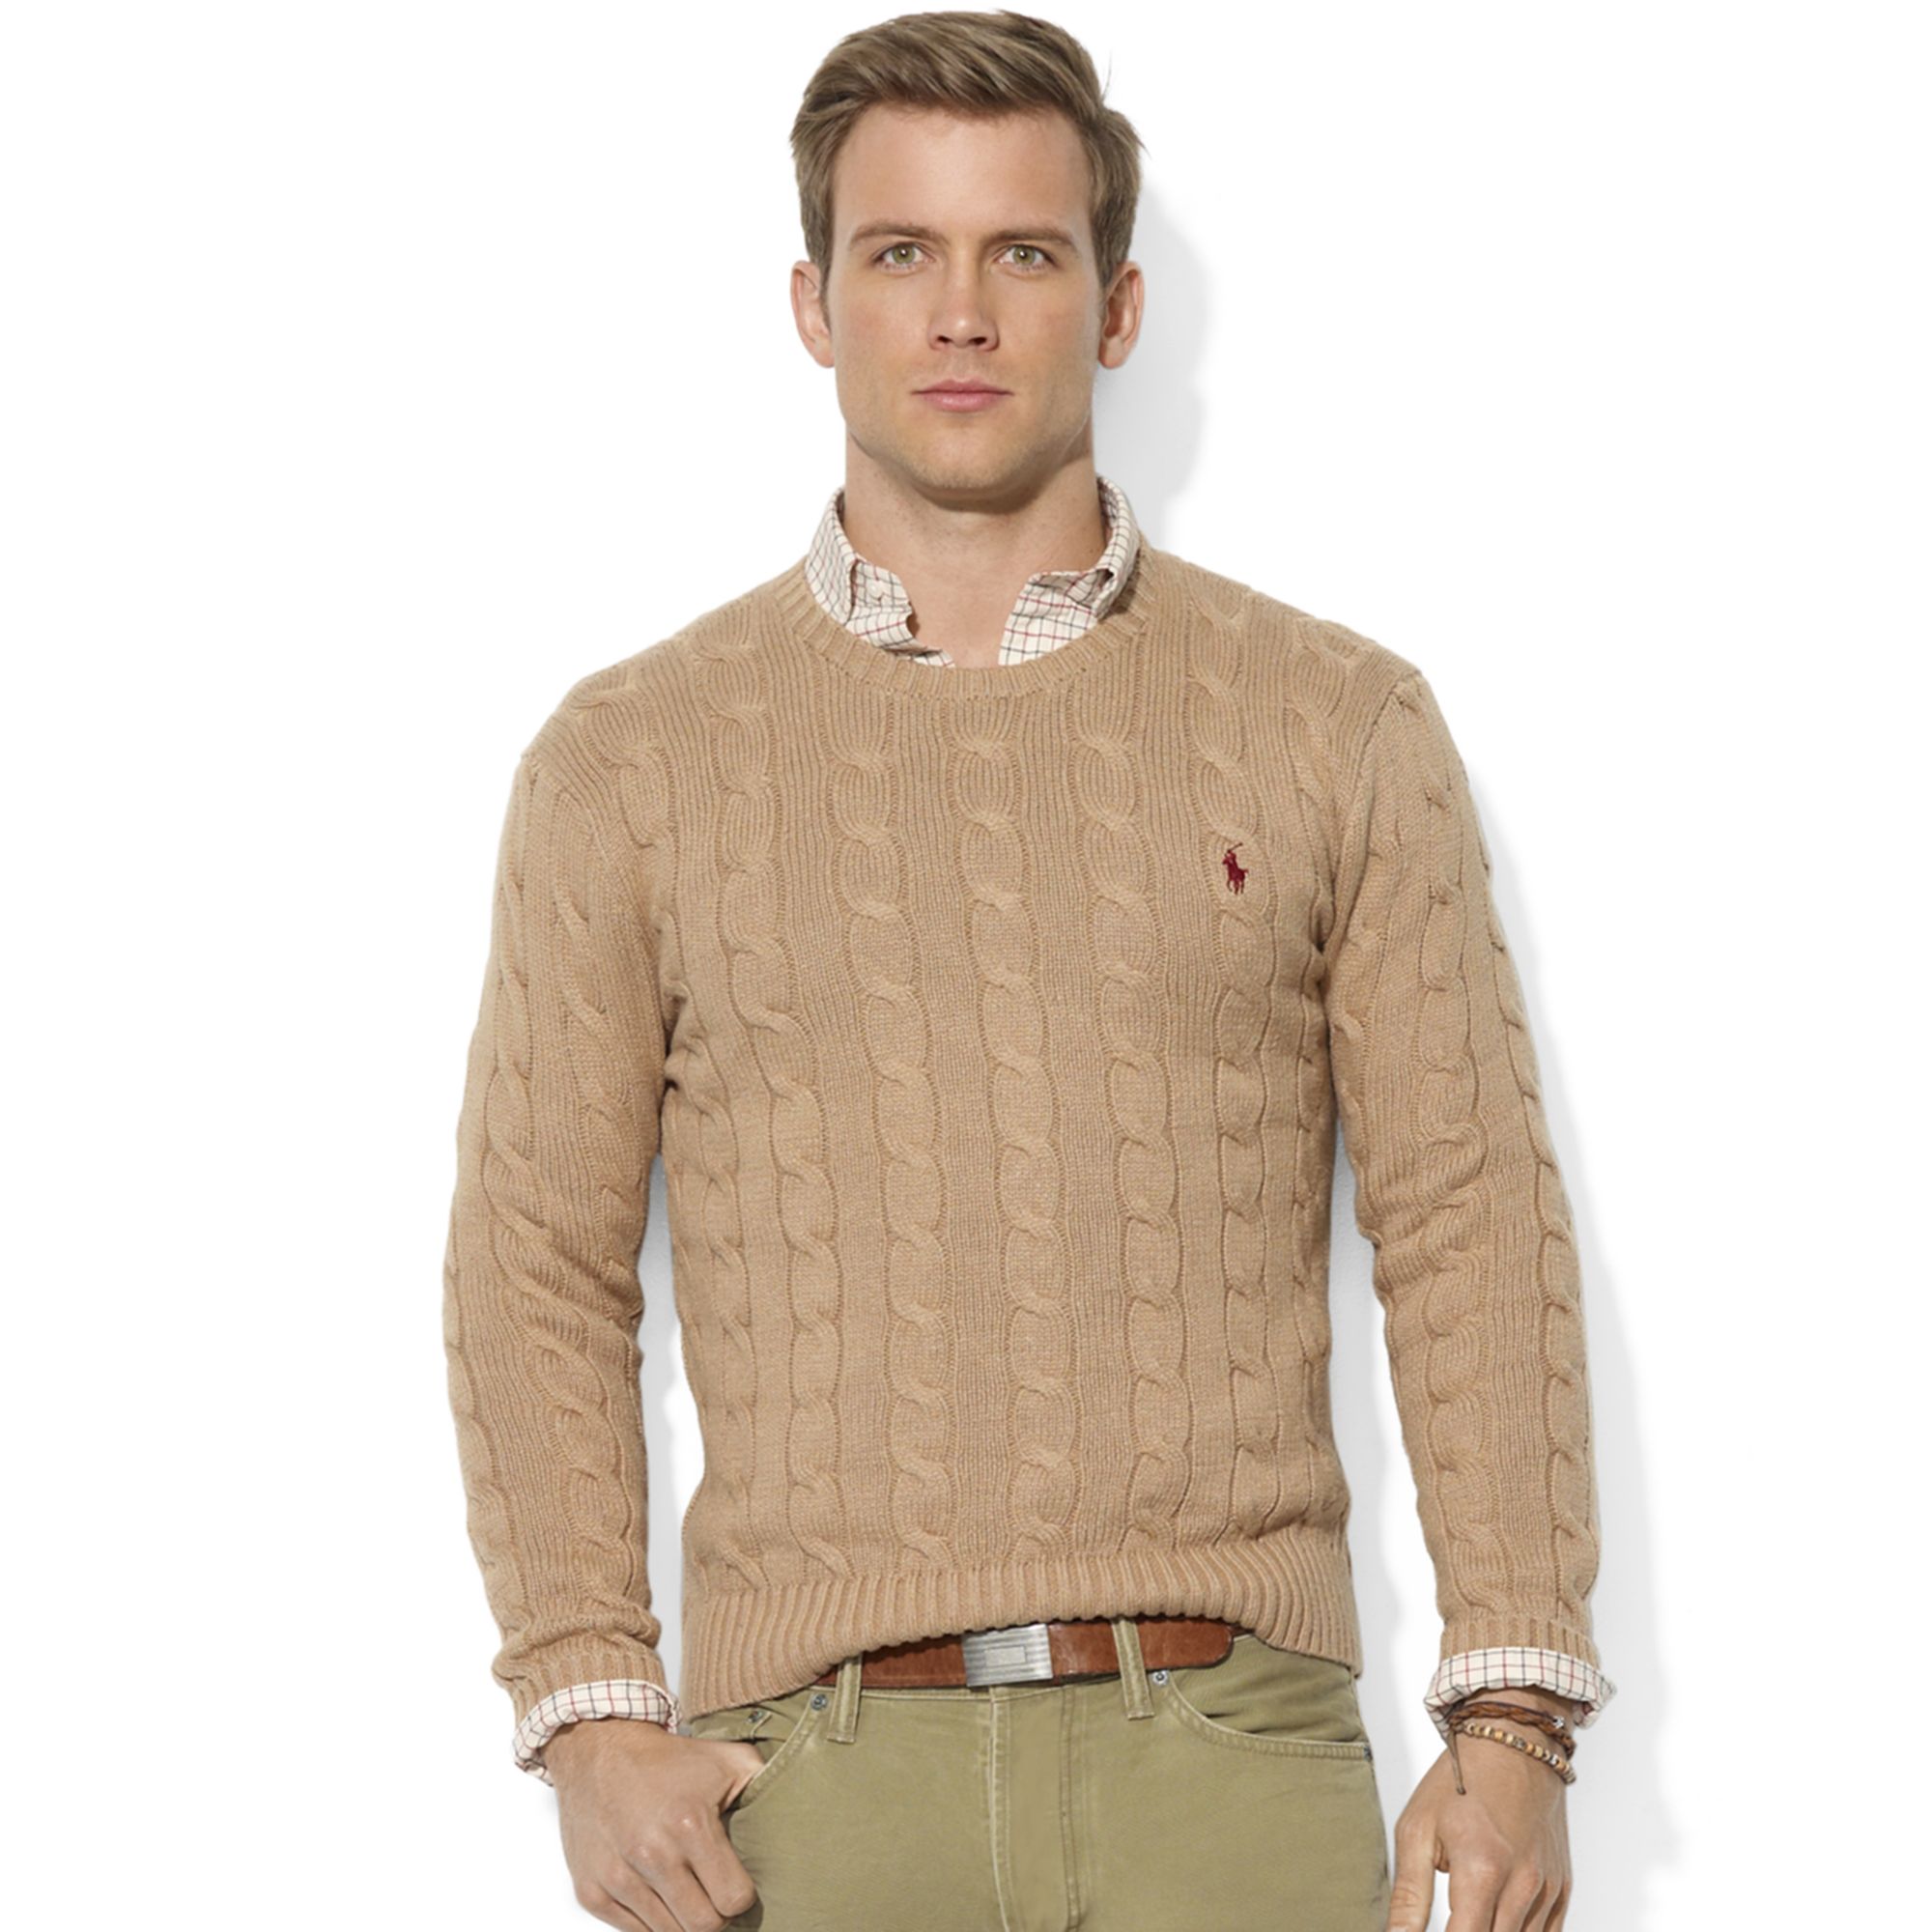 jfk-dress-sweater-3.jpg